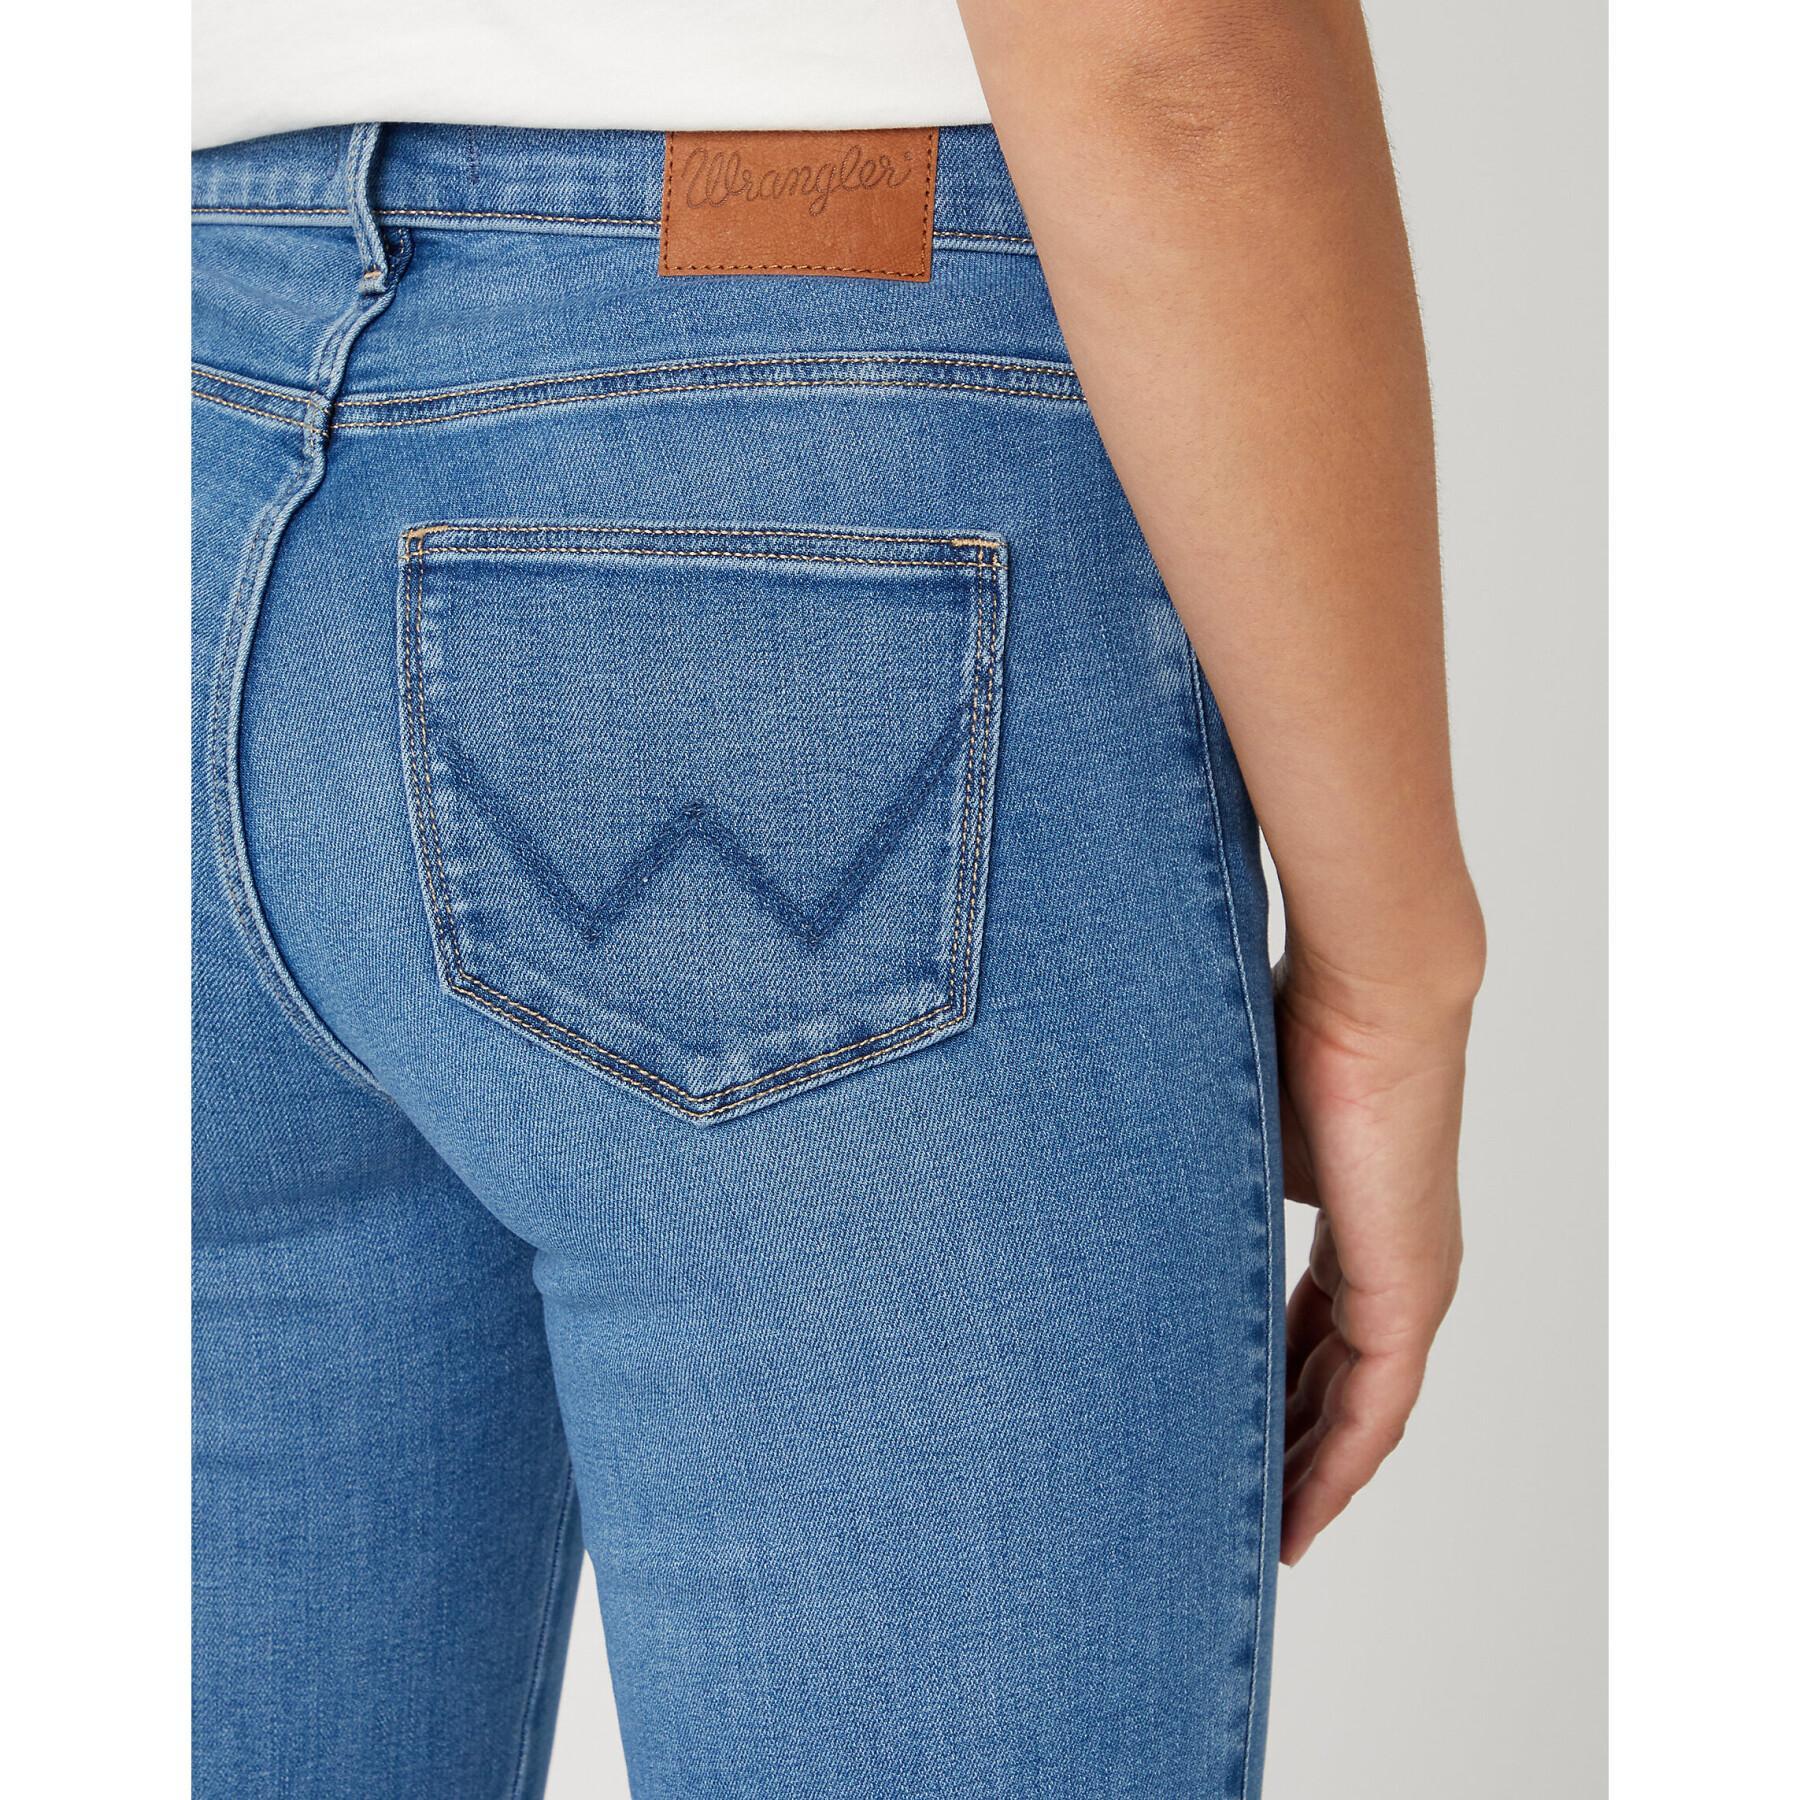 Jeans femme Wrangler Straight